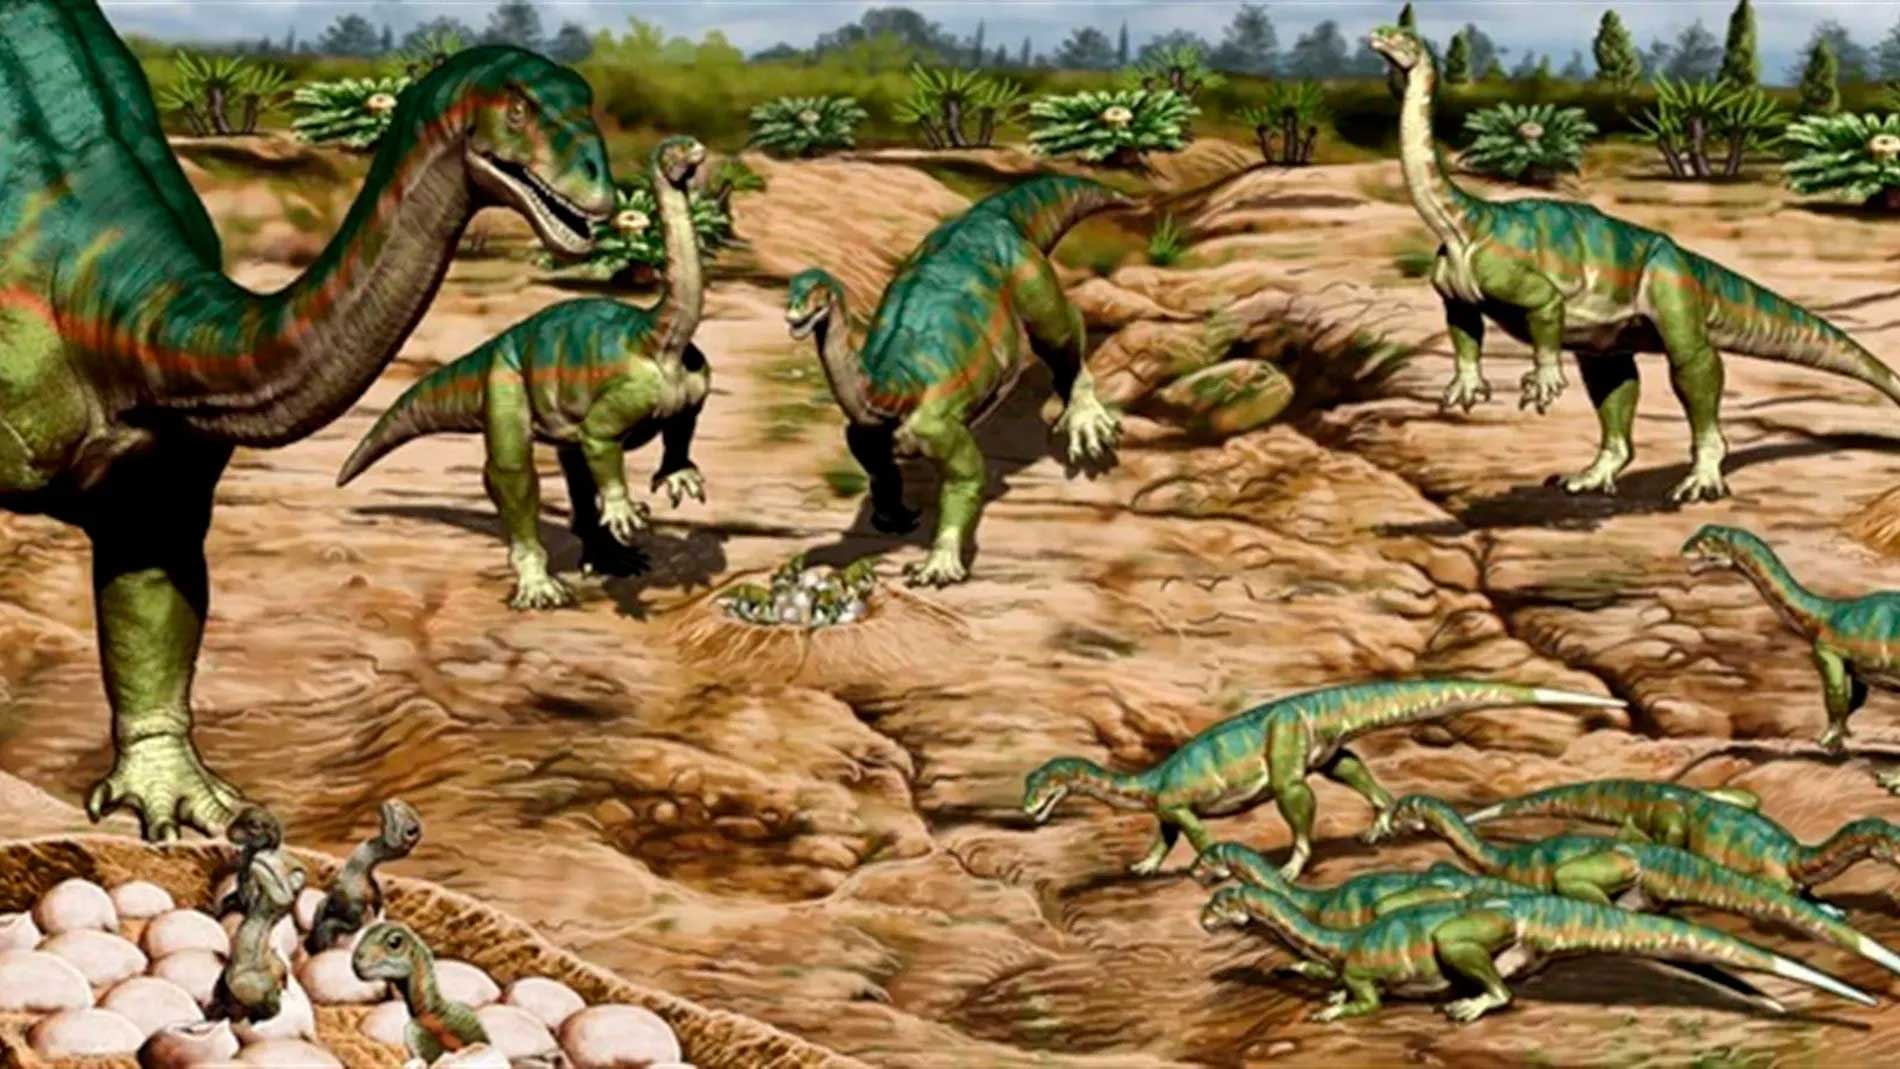 Découverte d'un nid contenant plus de 100 dinosaures qui vivaient autrefois en troupe